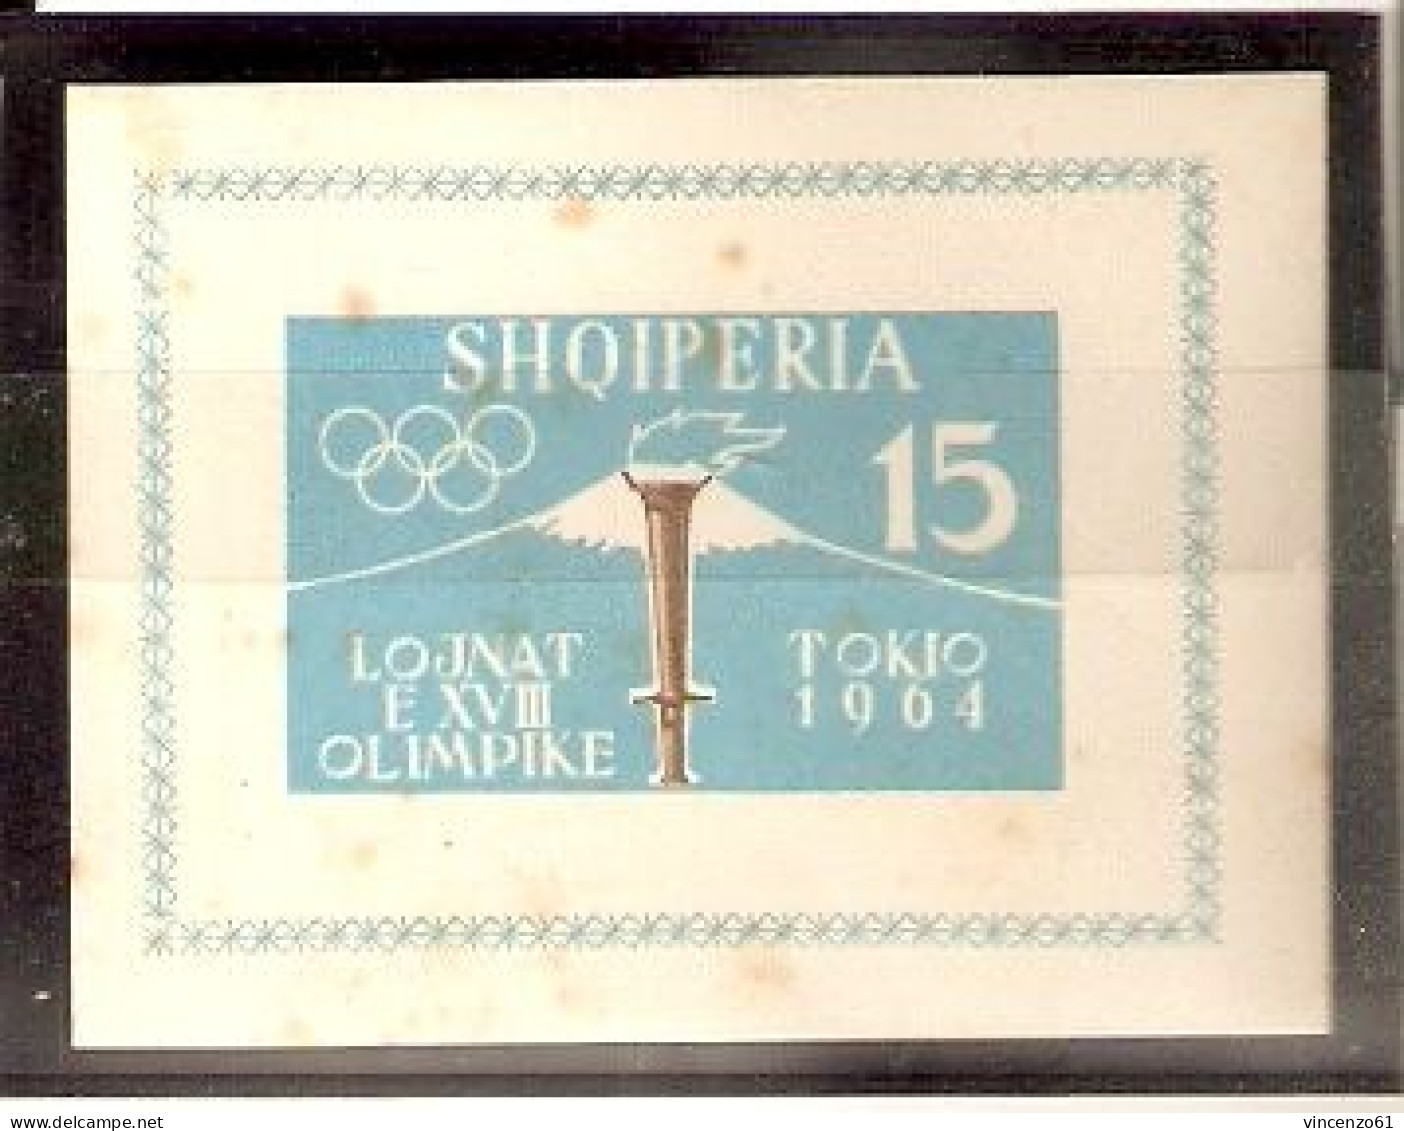 SHQIPERIA TOKIO 1964 OLIMPIC GAME UNPERFORATED - Verano 1964: Tokio